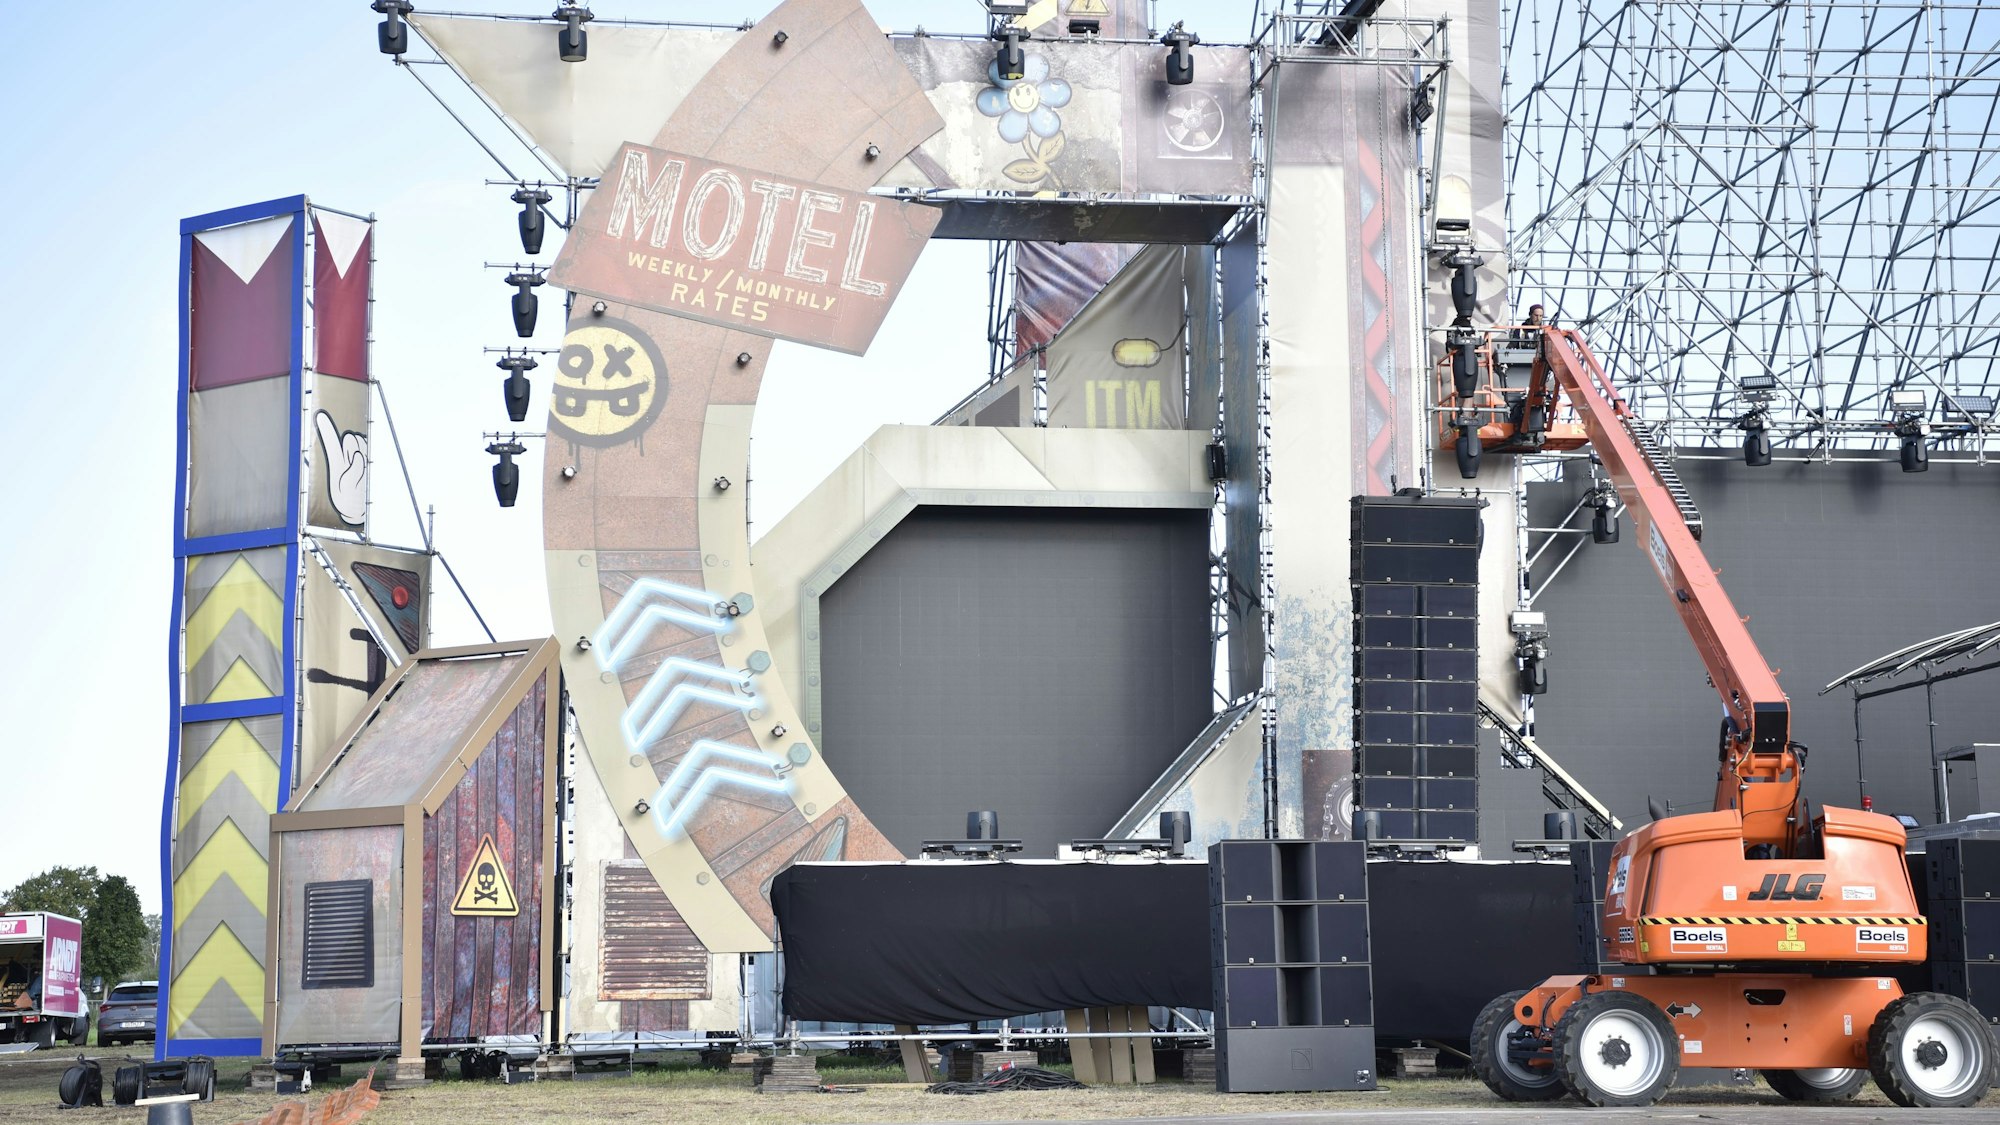 Das Bild zeigt den linken Teil einer großen Festivalbühne. Rechts arbeiten zwei Mitarbeiter auf einem Hubsteiger am Bühnenbild.